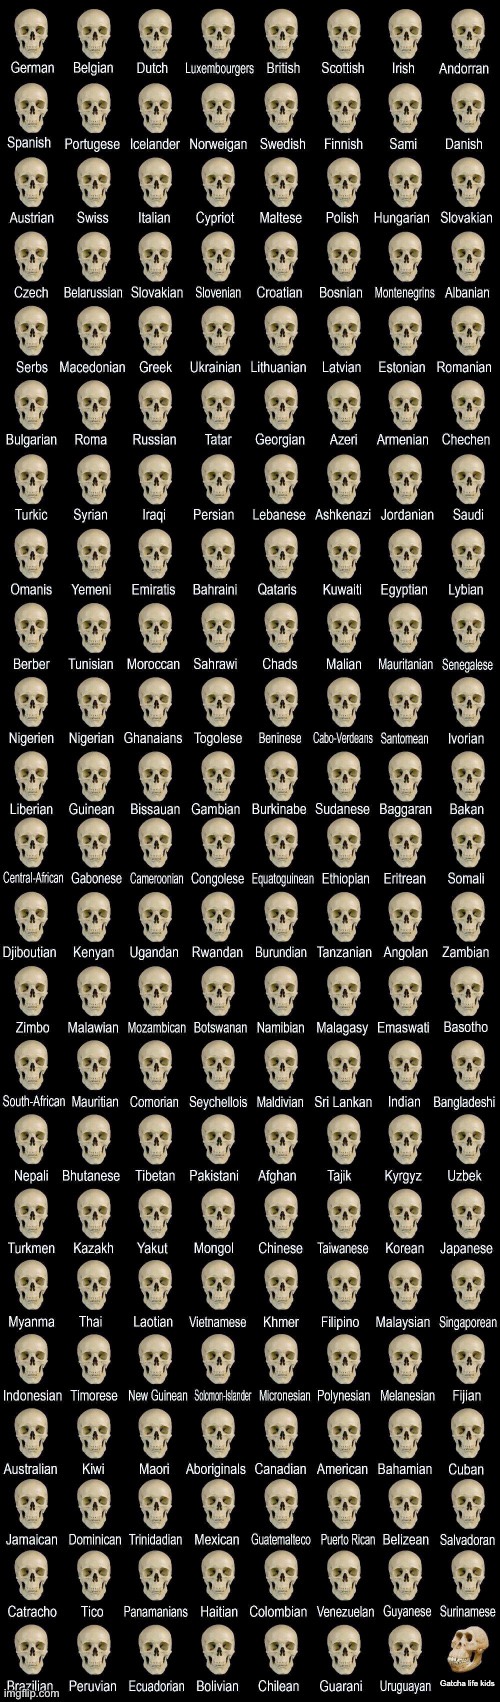 Deformed skull | Gatcha life kids | image tagged in deformed skull,cringe | made w/ Imgflip meme maker